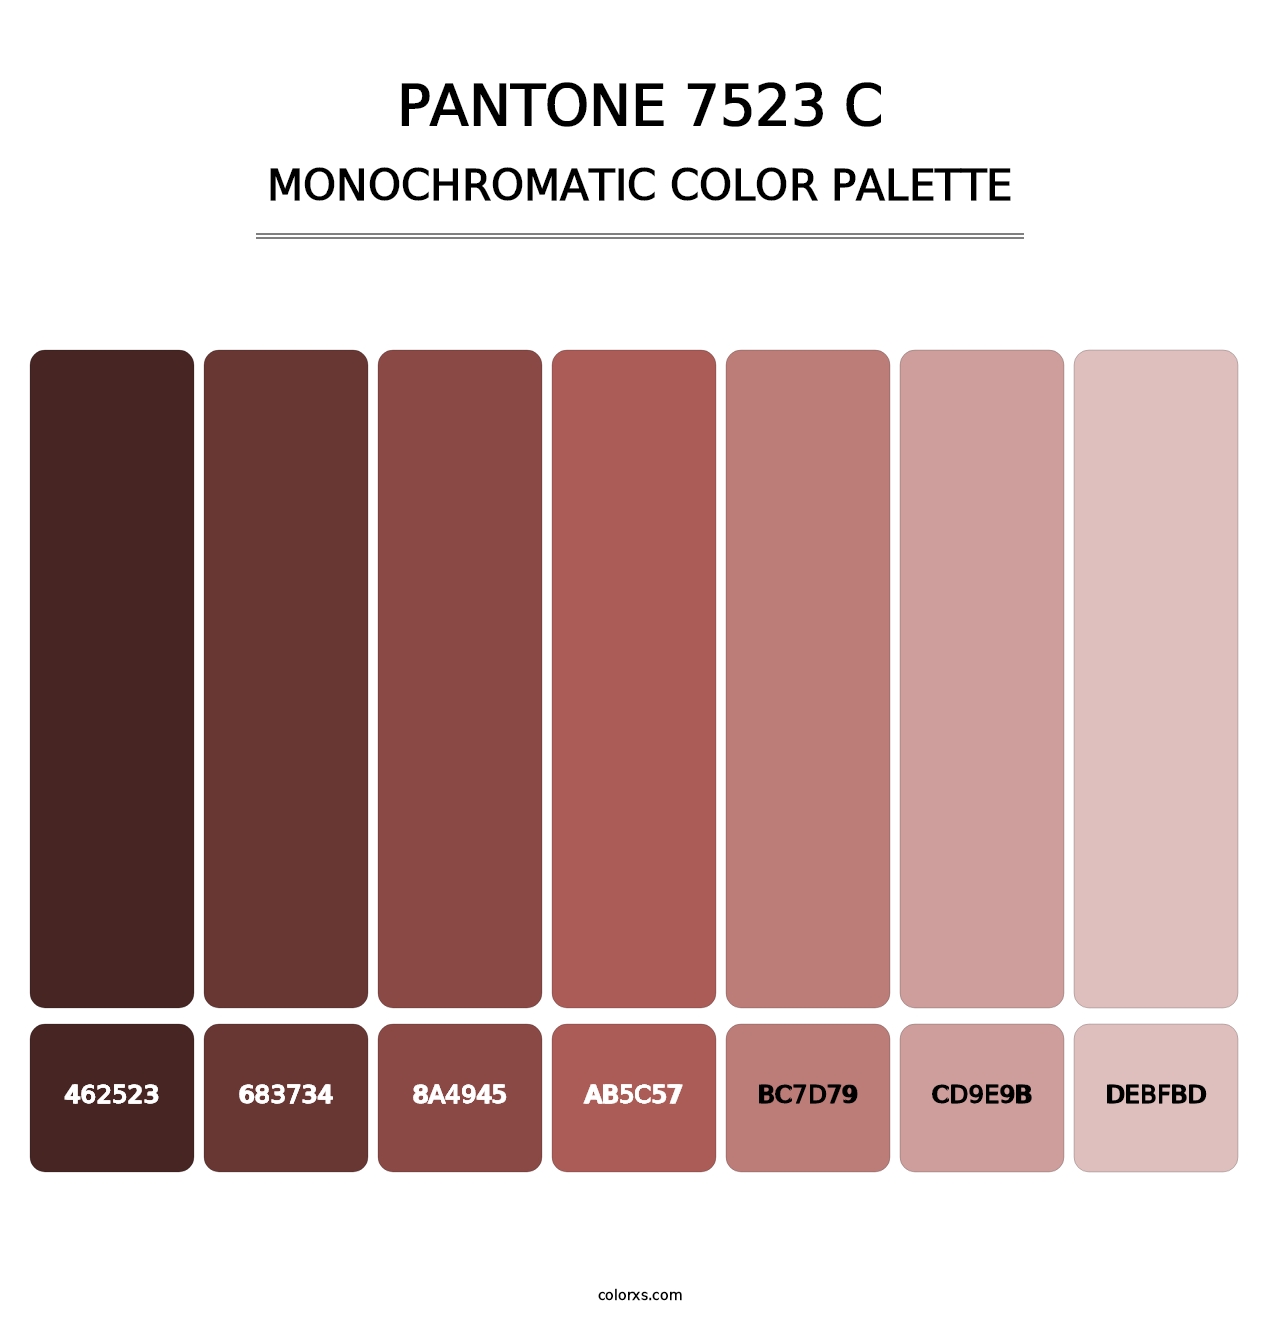 PANTONE 7523 C - Monochromatic Color Palette